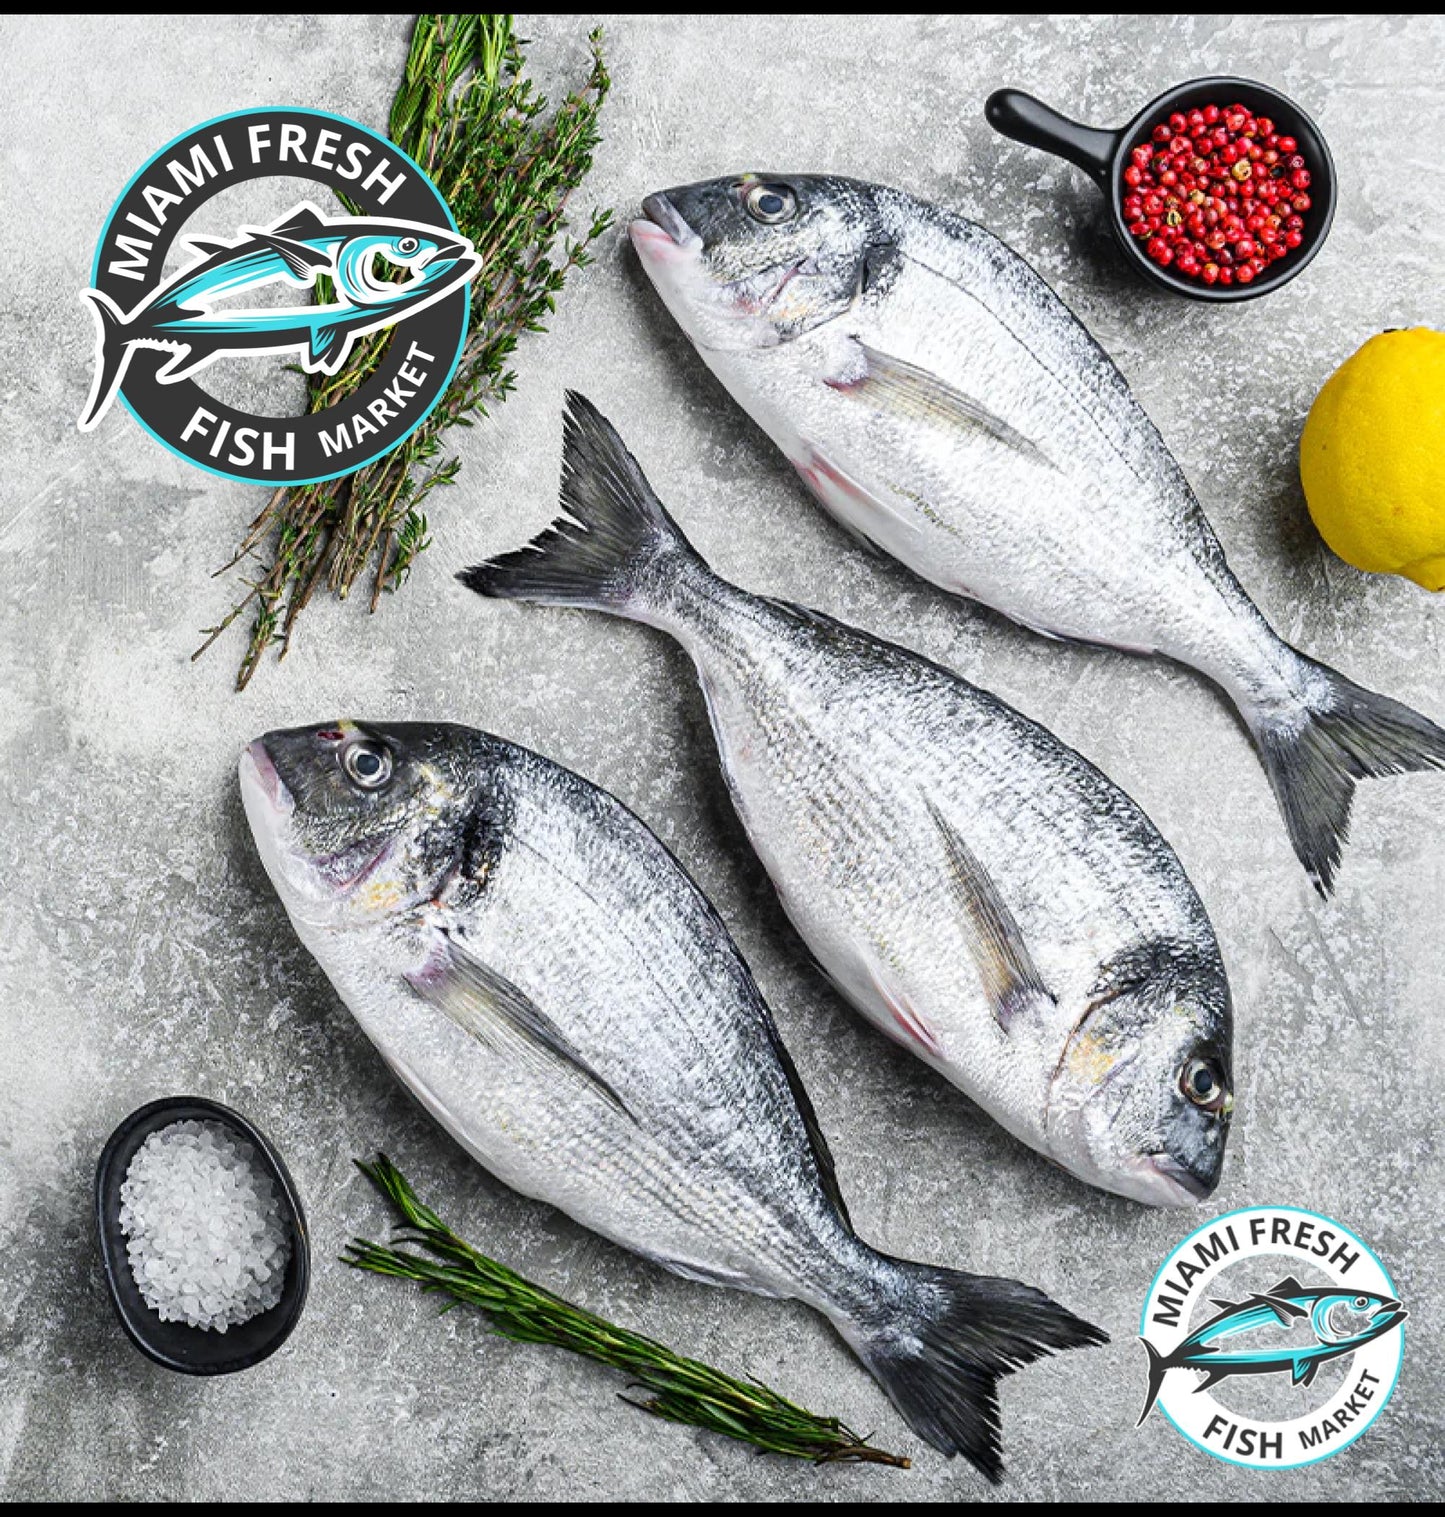 Sea Bream Mediterranean Whole Fish or Fillet | Per Pound